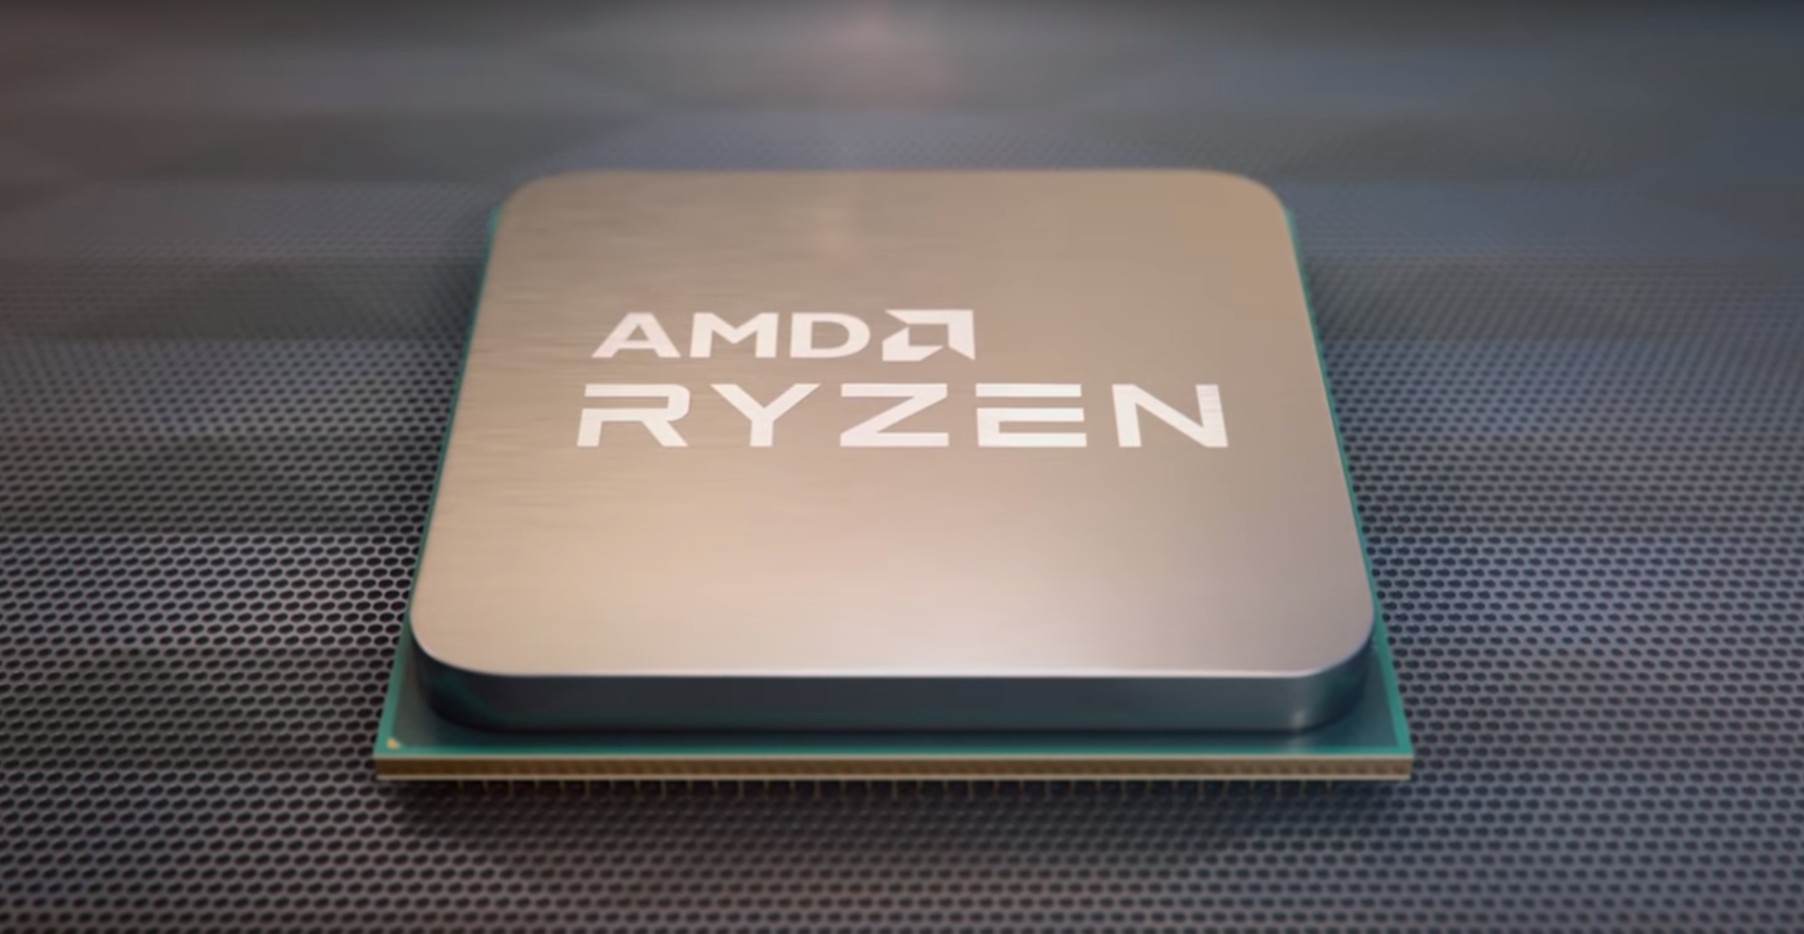 AMD-Ryzen-Best54.jpg